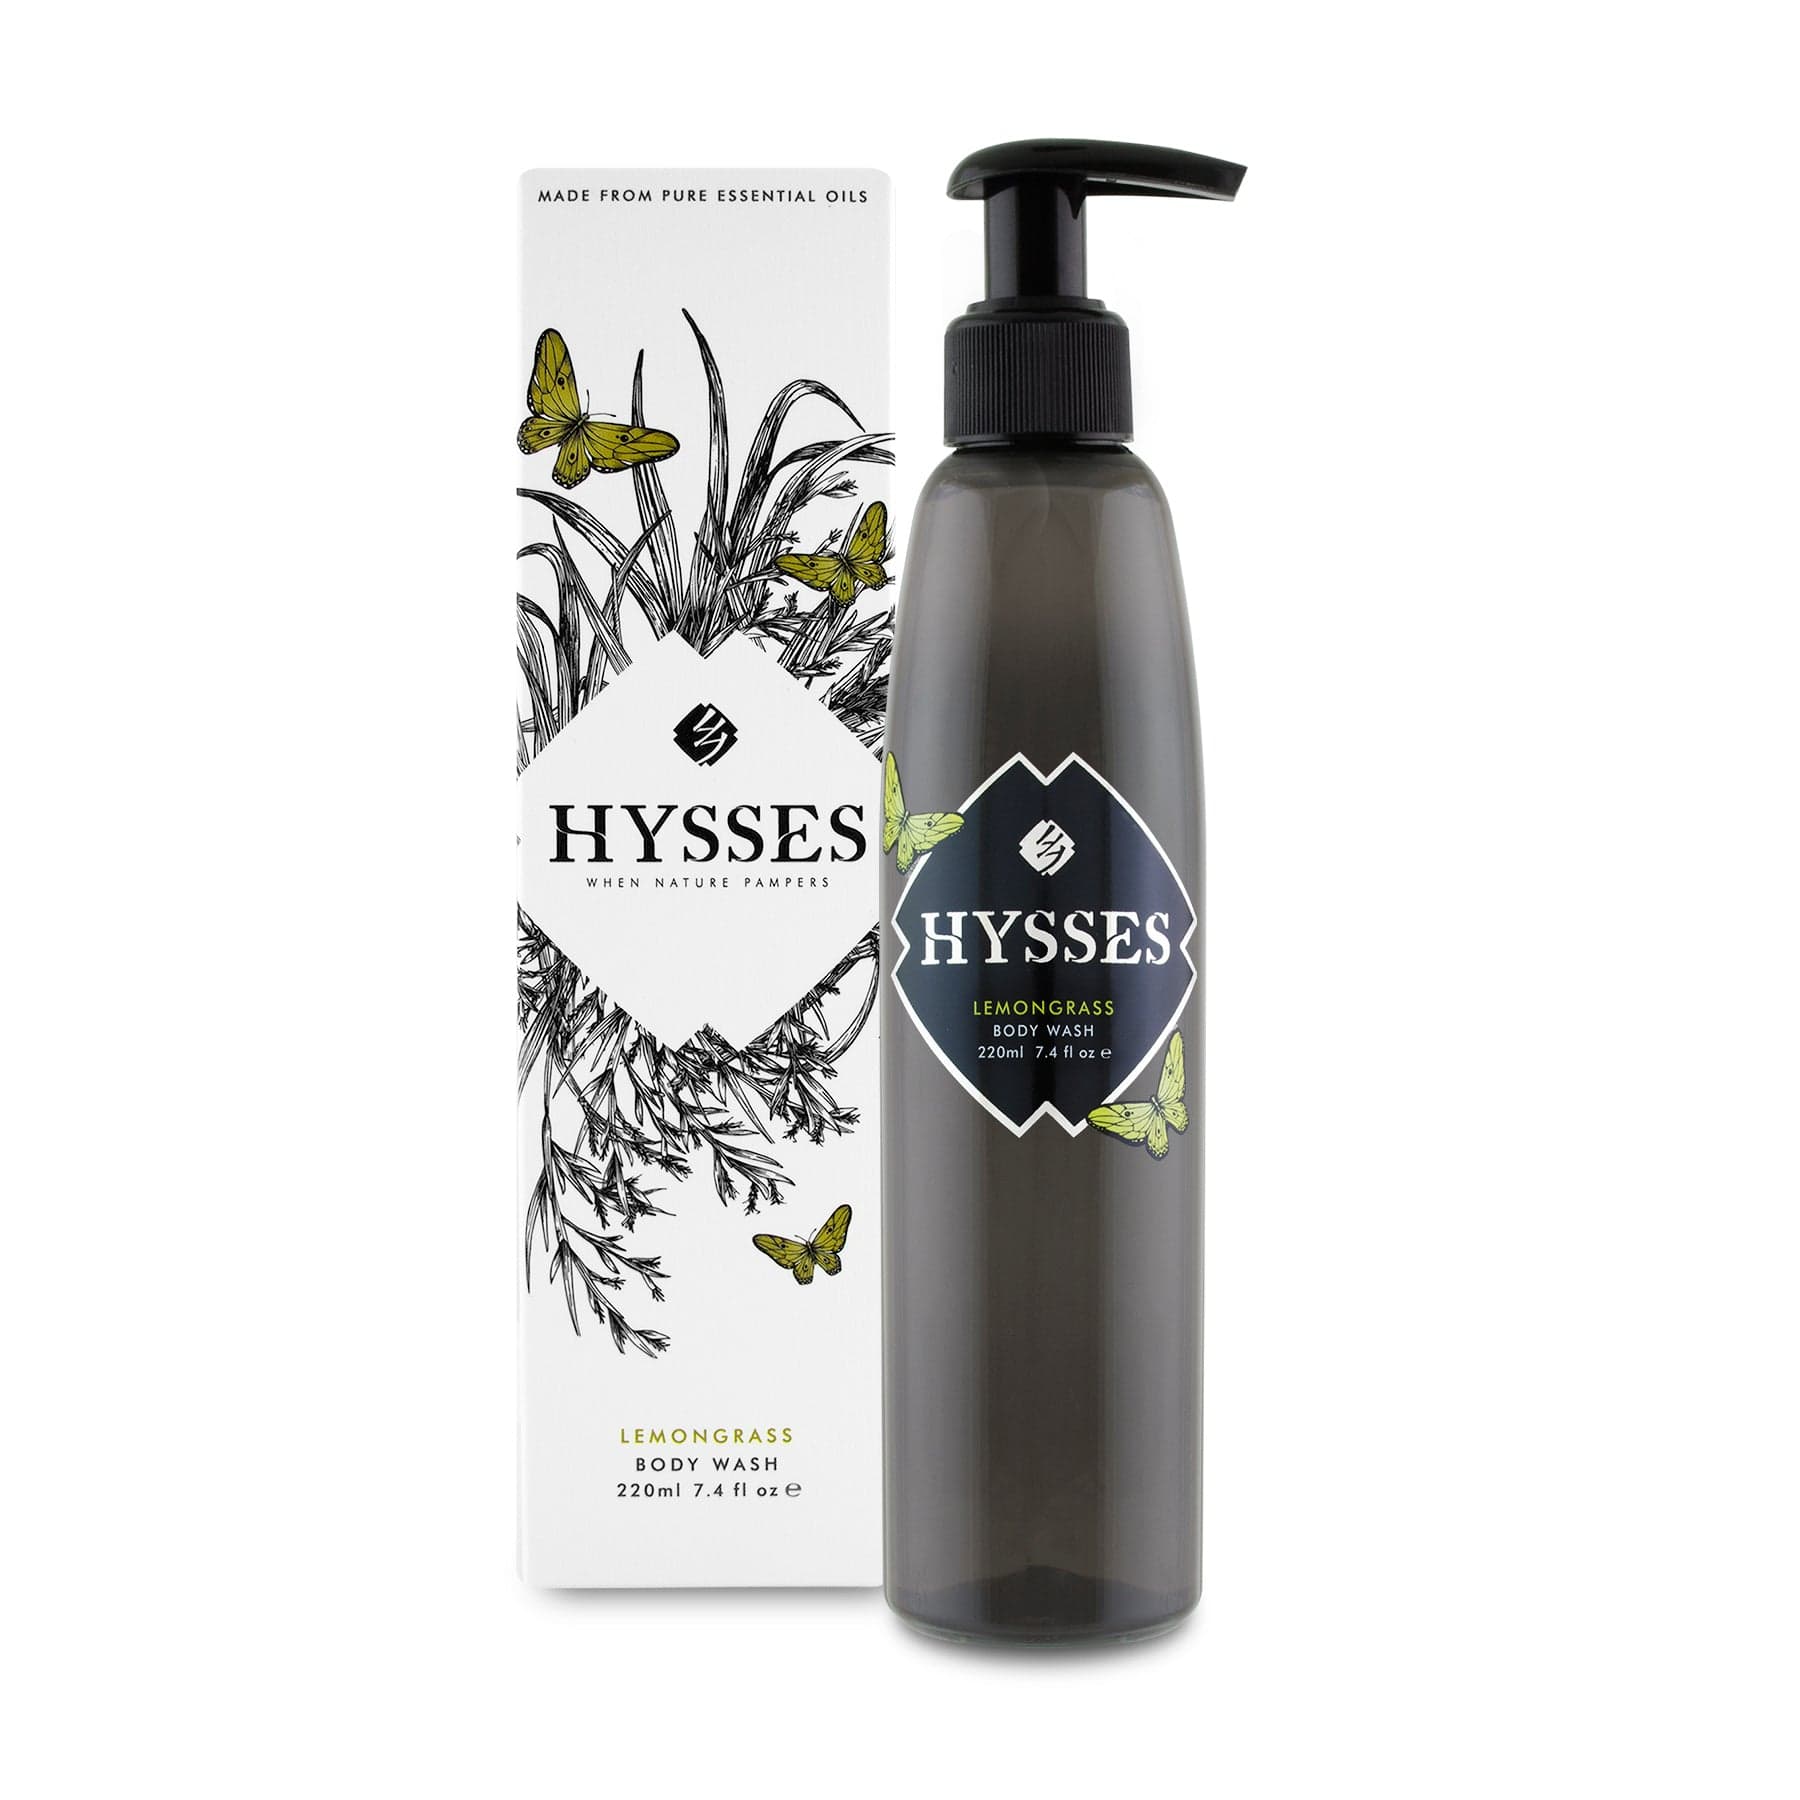 Hysses Body Care 220ml Body Wash Lemongrass, 220ml